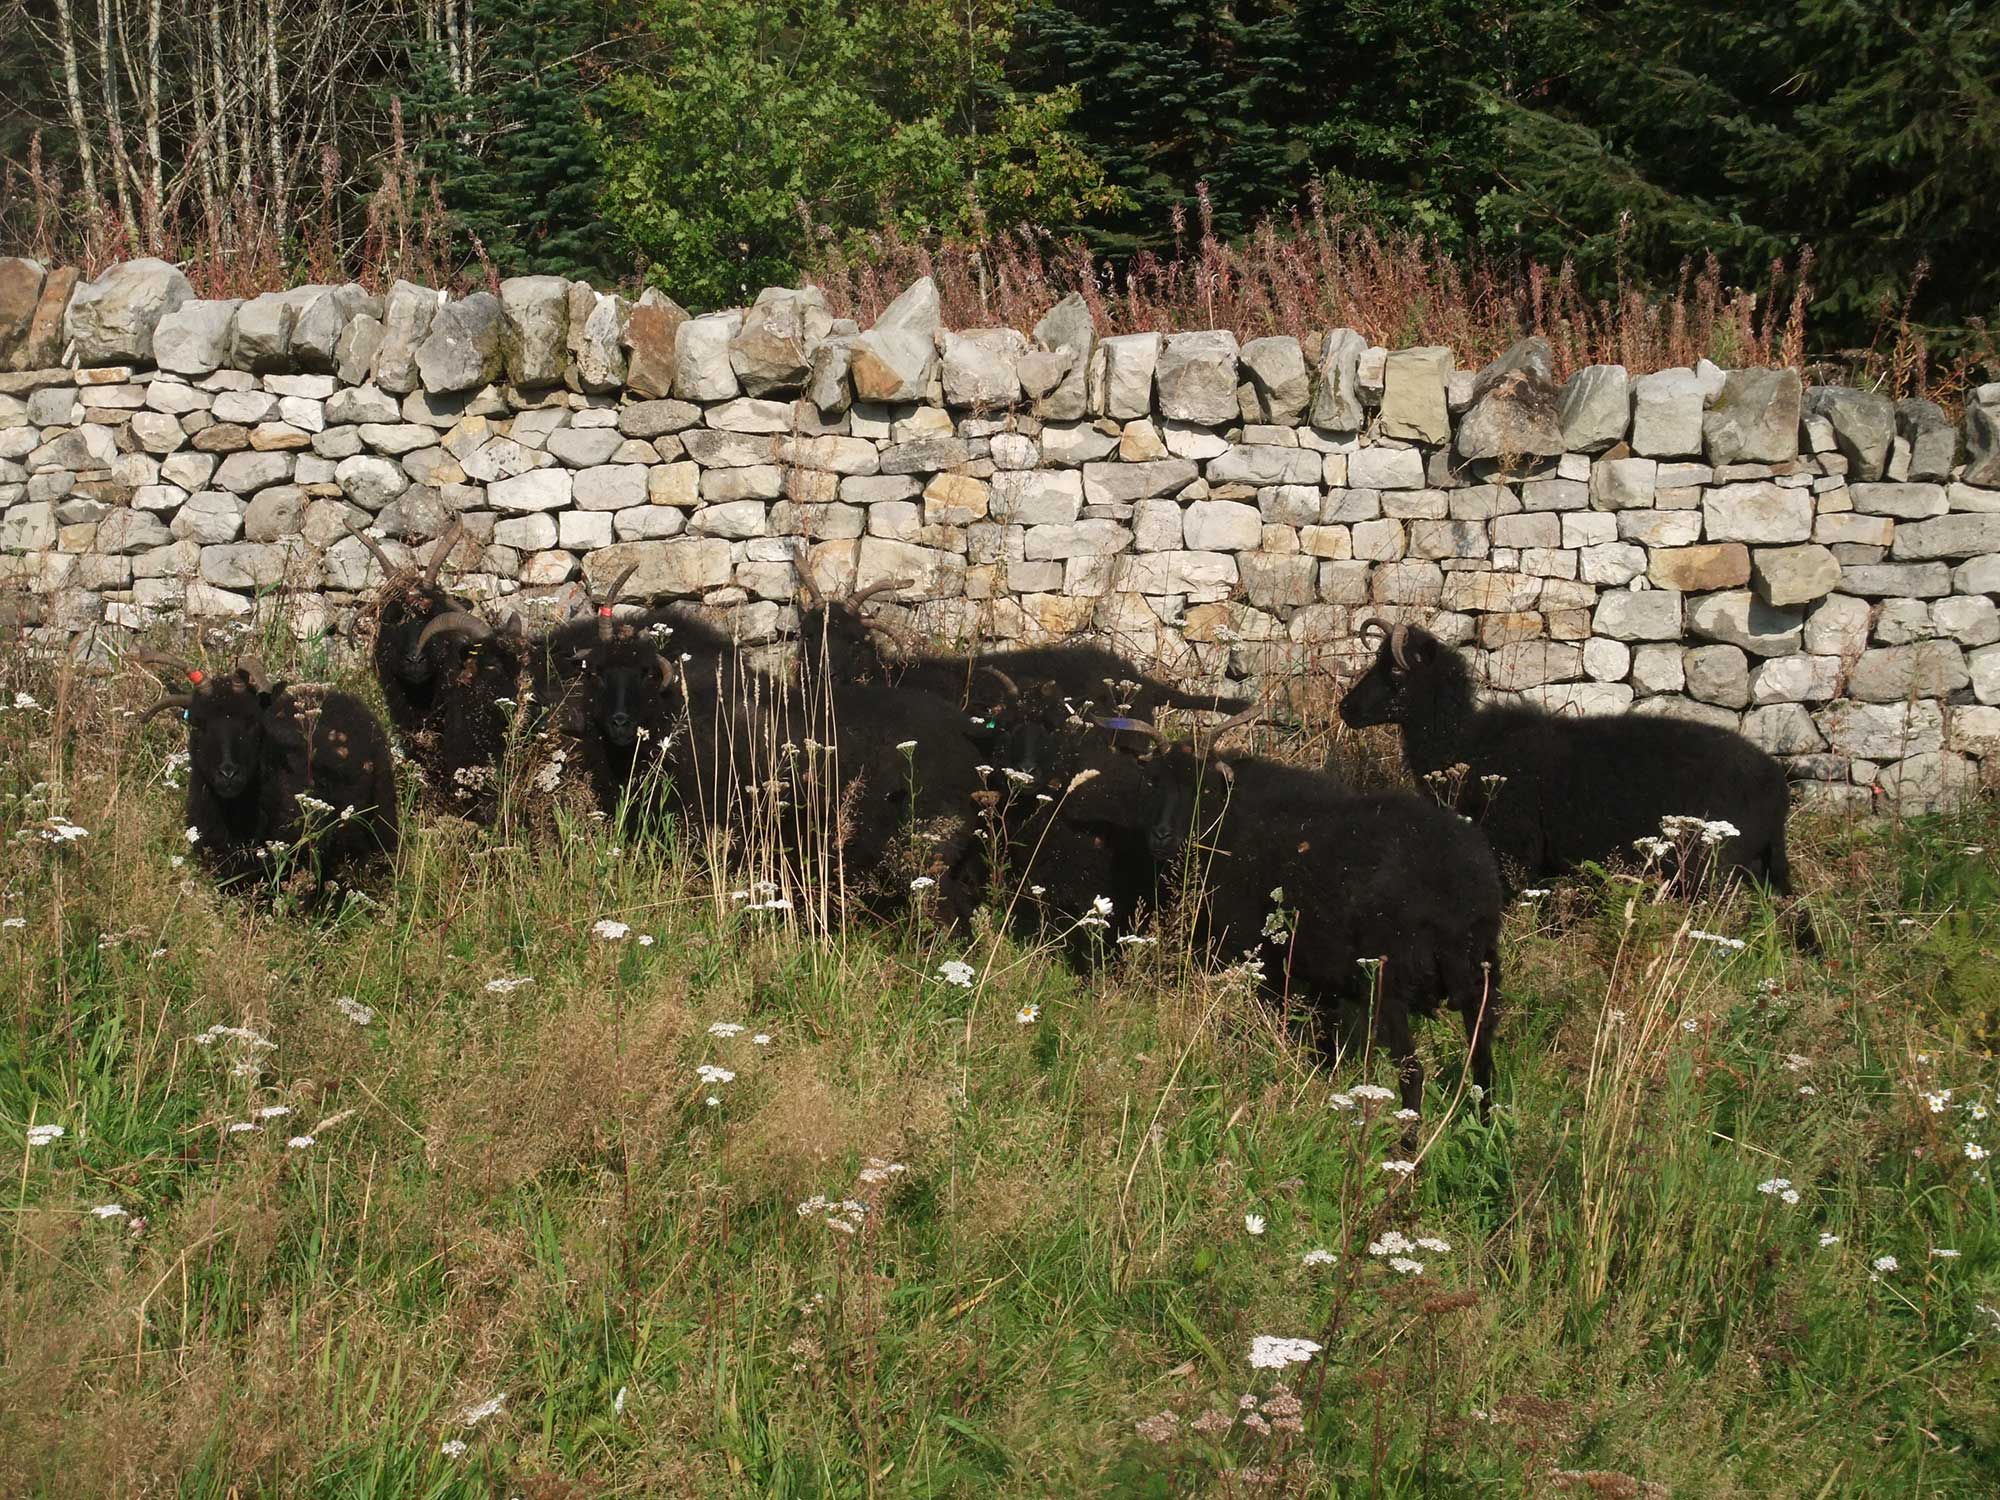 *Hebridean Sheep in Wildflower meadow